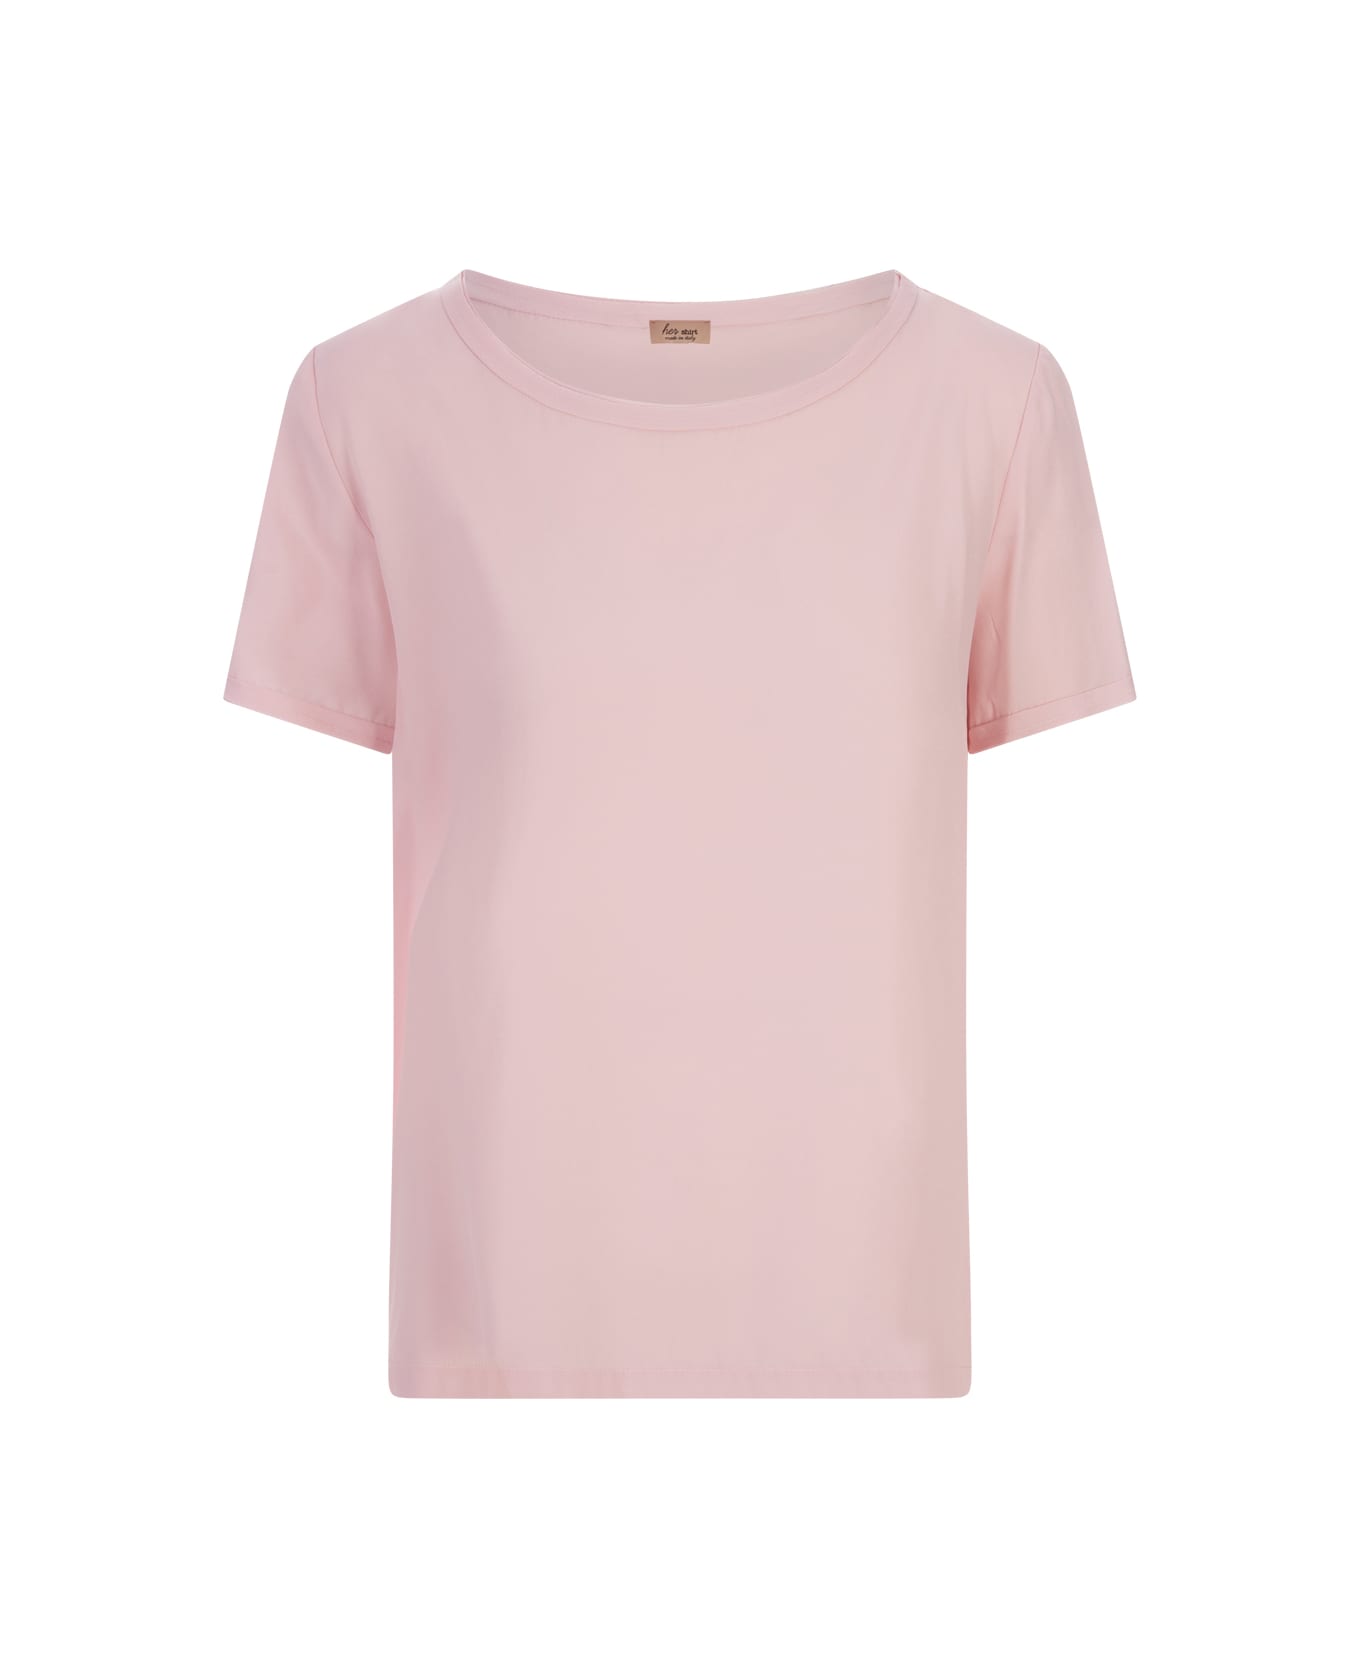 Her Shirt Pink Opaque Silk T-shirt - Pink